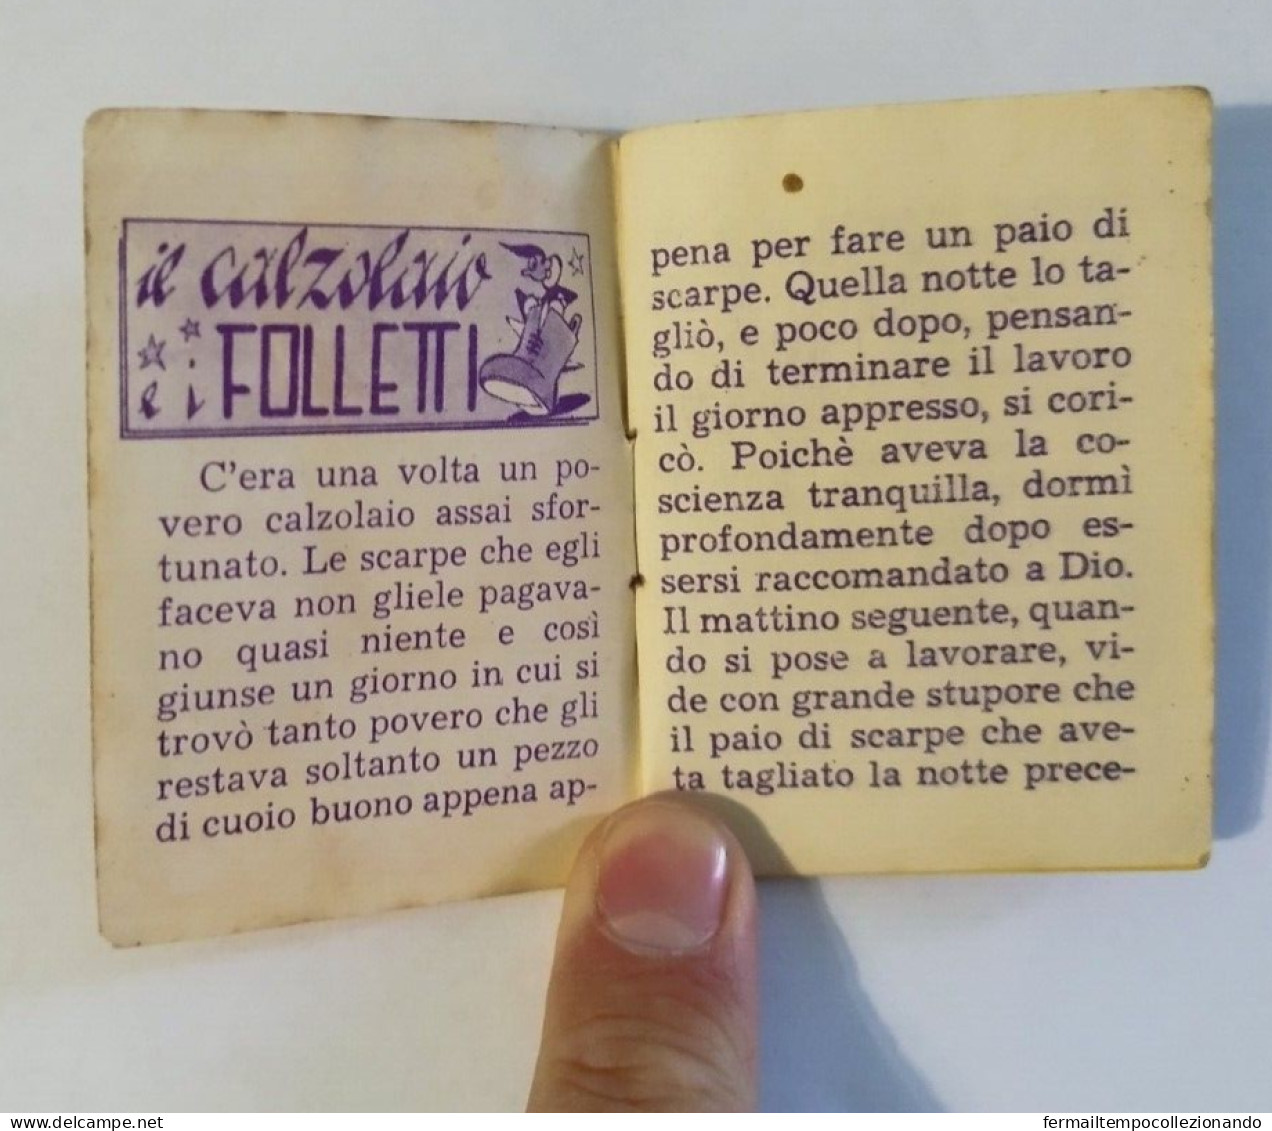 Bq28 Libretto Minifiabe Tascabili Il Calzolaio Ed I Folletti Ed Vecchi 1952 N40 - Zonder Classificatie